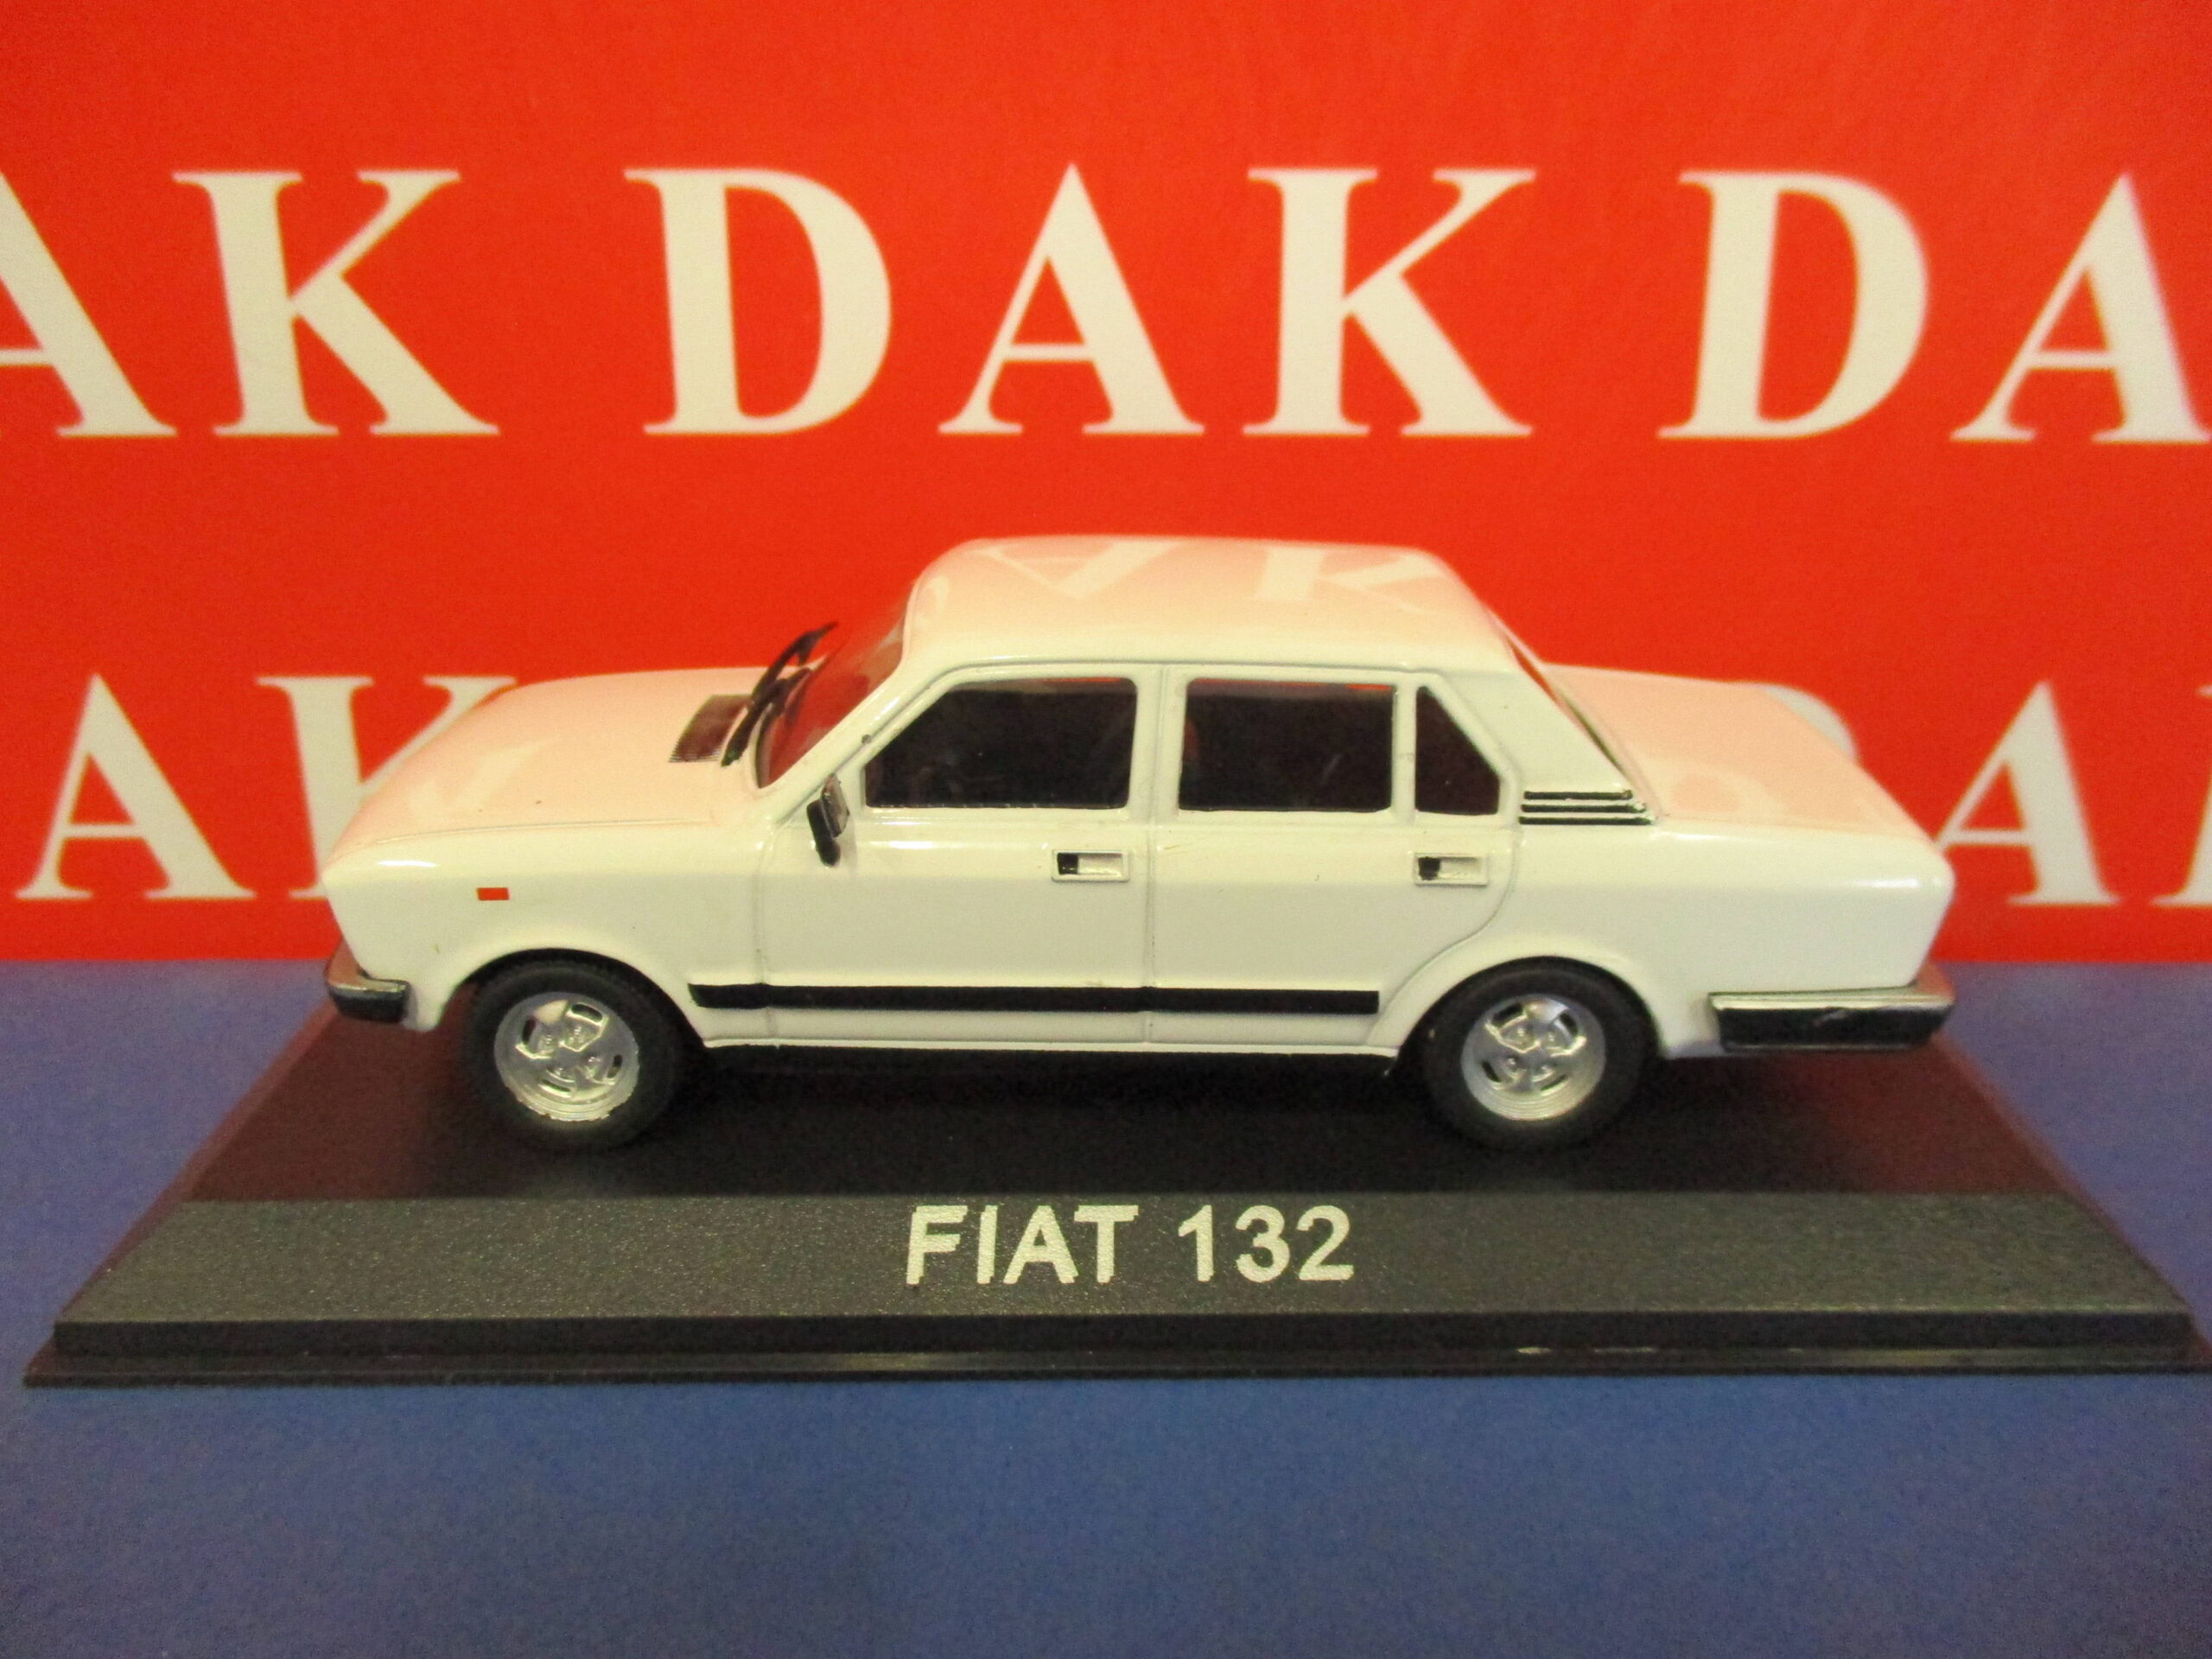 The cast 1/43 model car Fiat 132